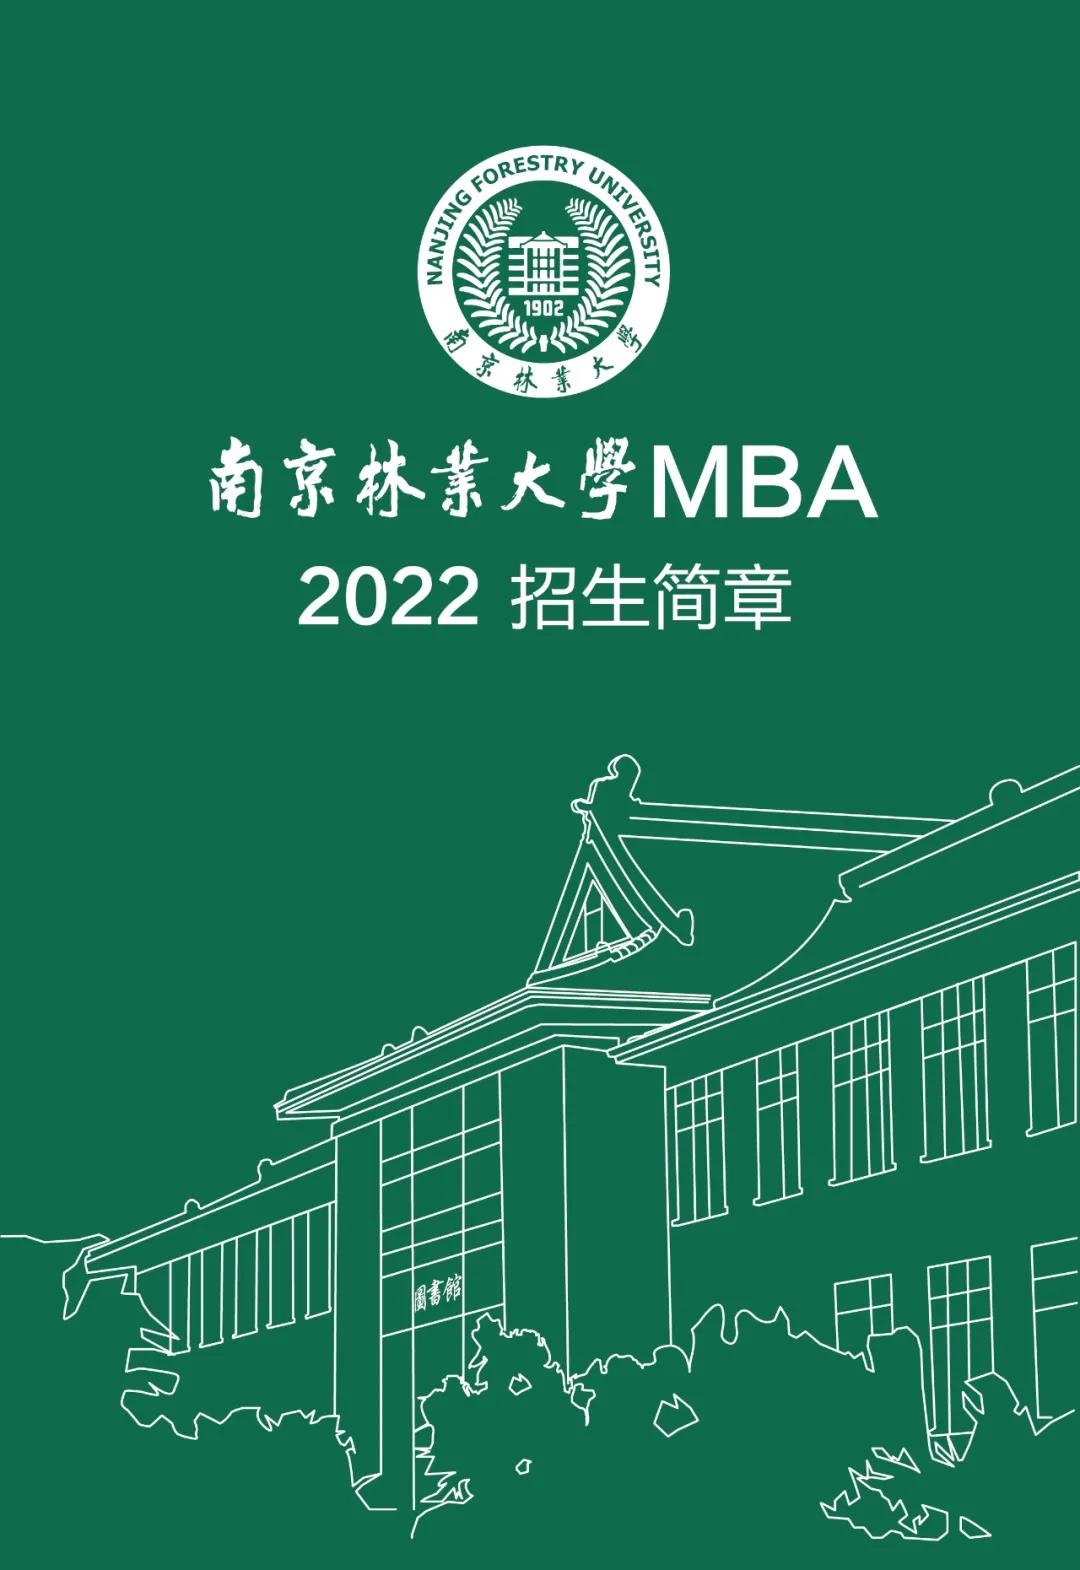 南京林业大学2022MBA招生简章及重要时间节点